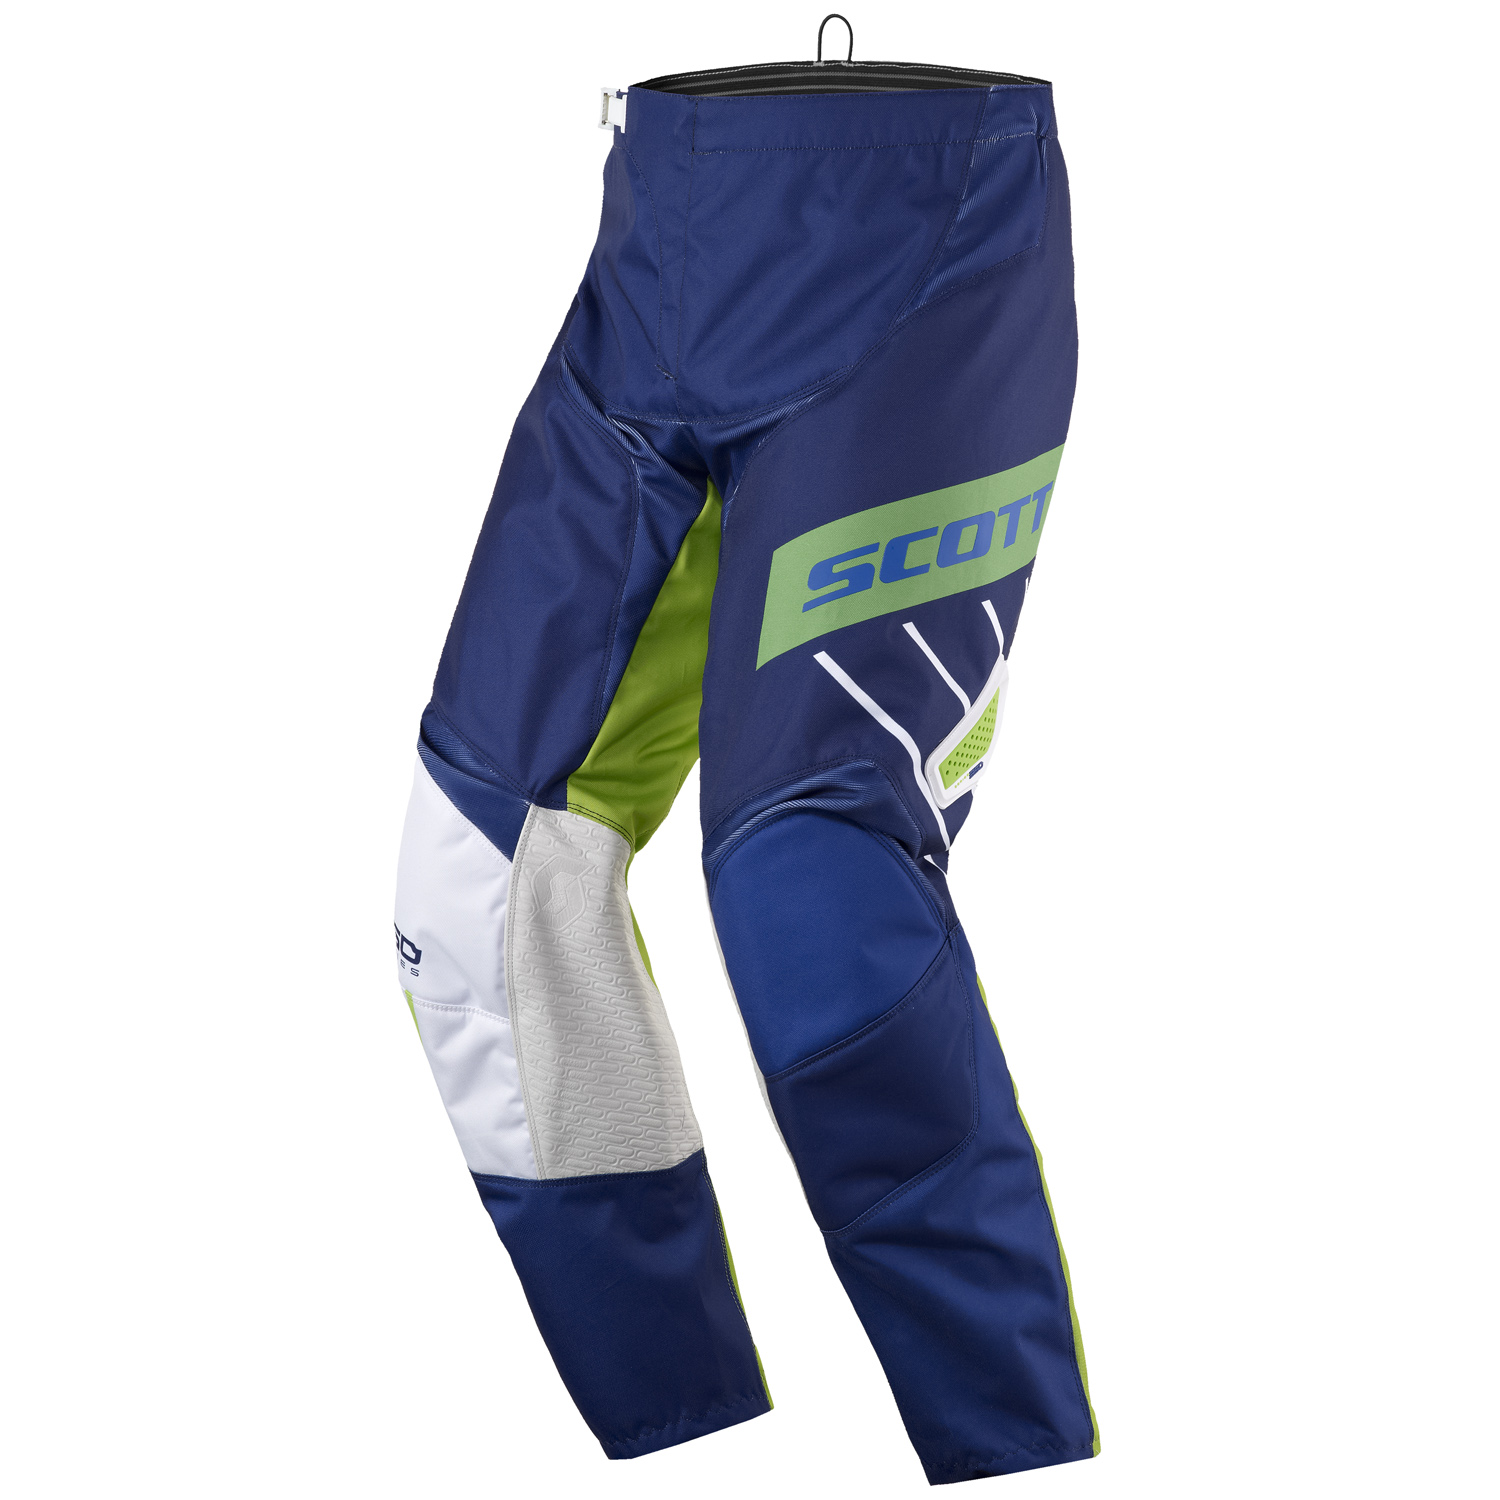 Scott 350 DIRT MX Motocross/DH Bike Trousers Blue/White/Green 2017 